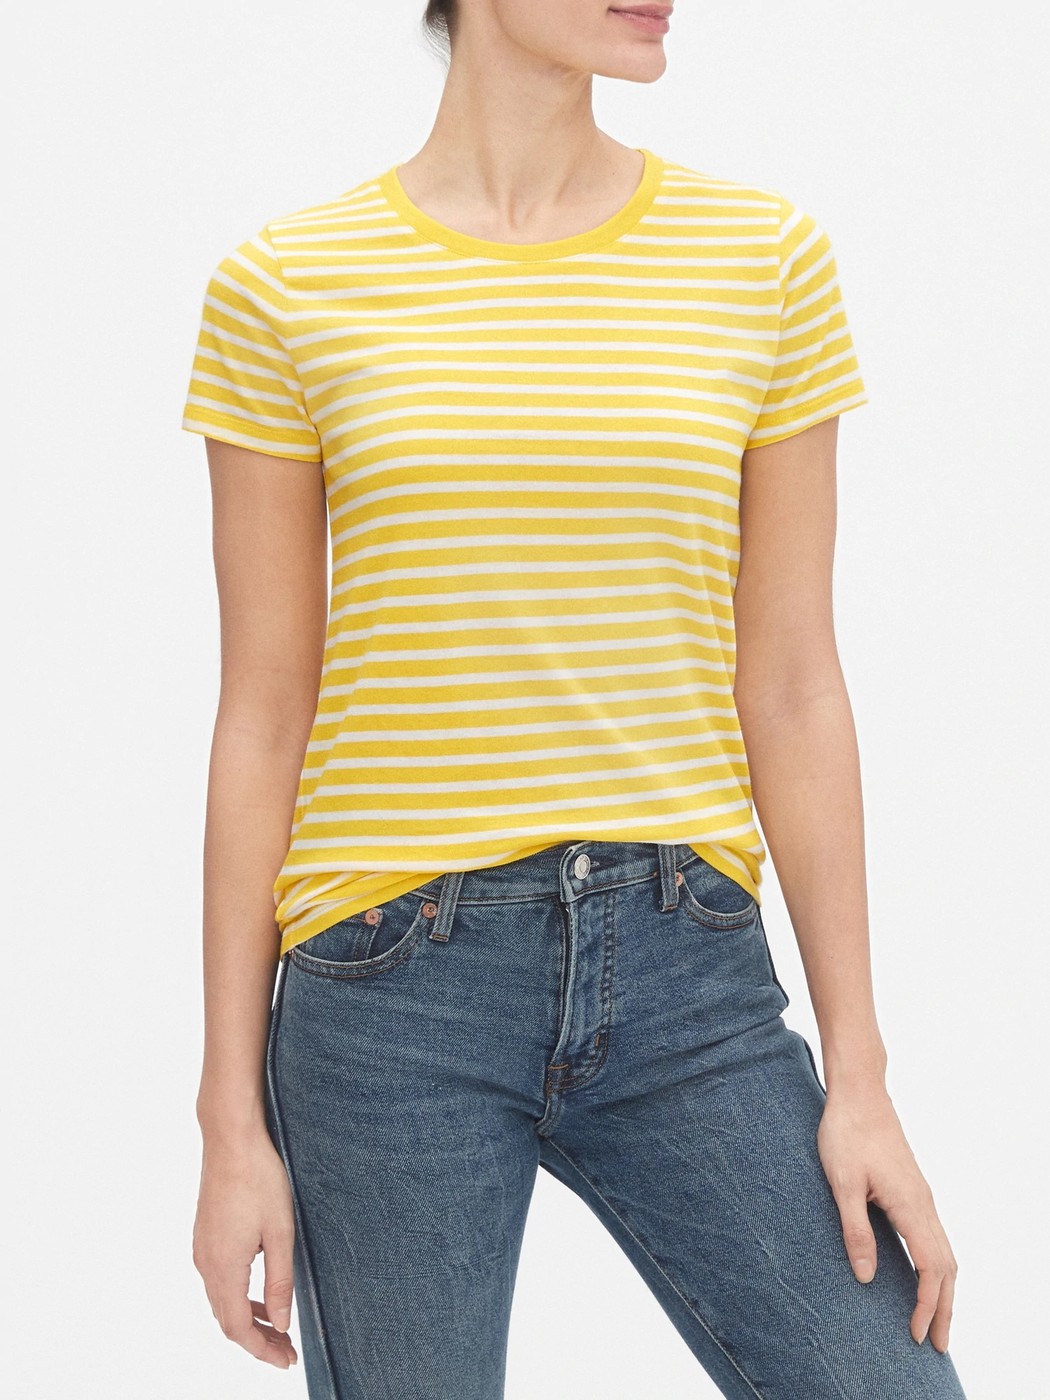 Желтая футболка - женская футболка GAP